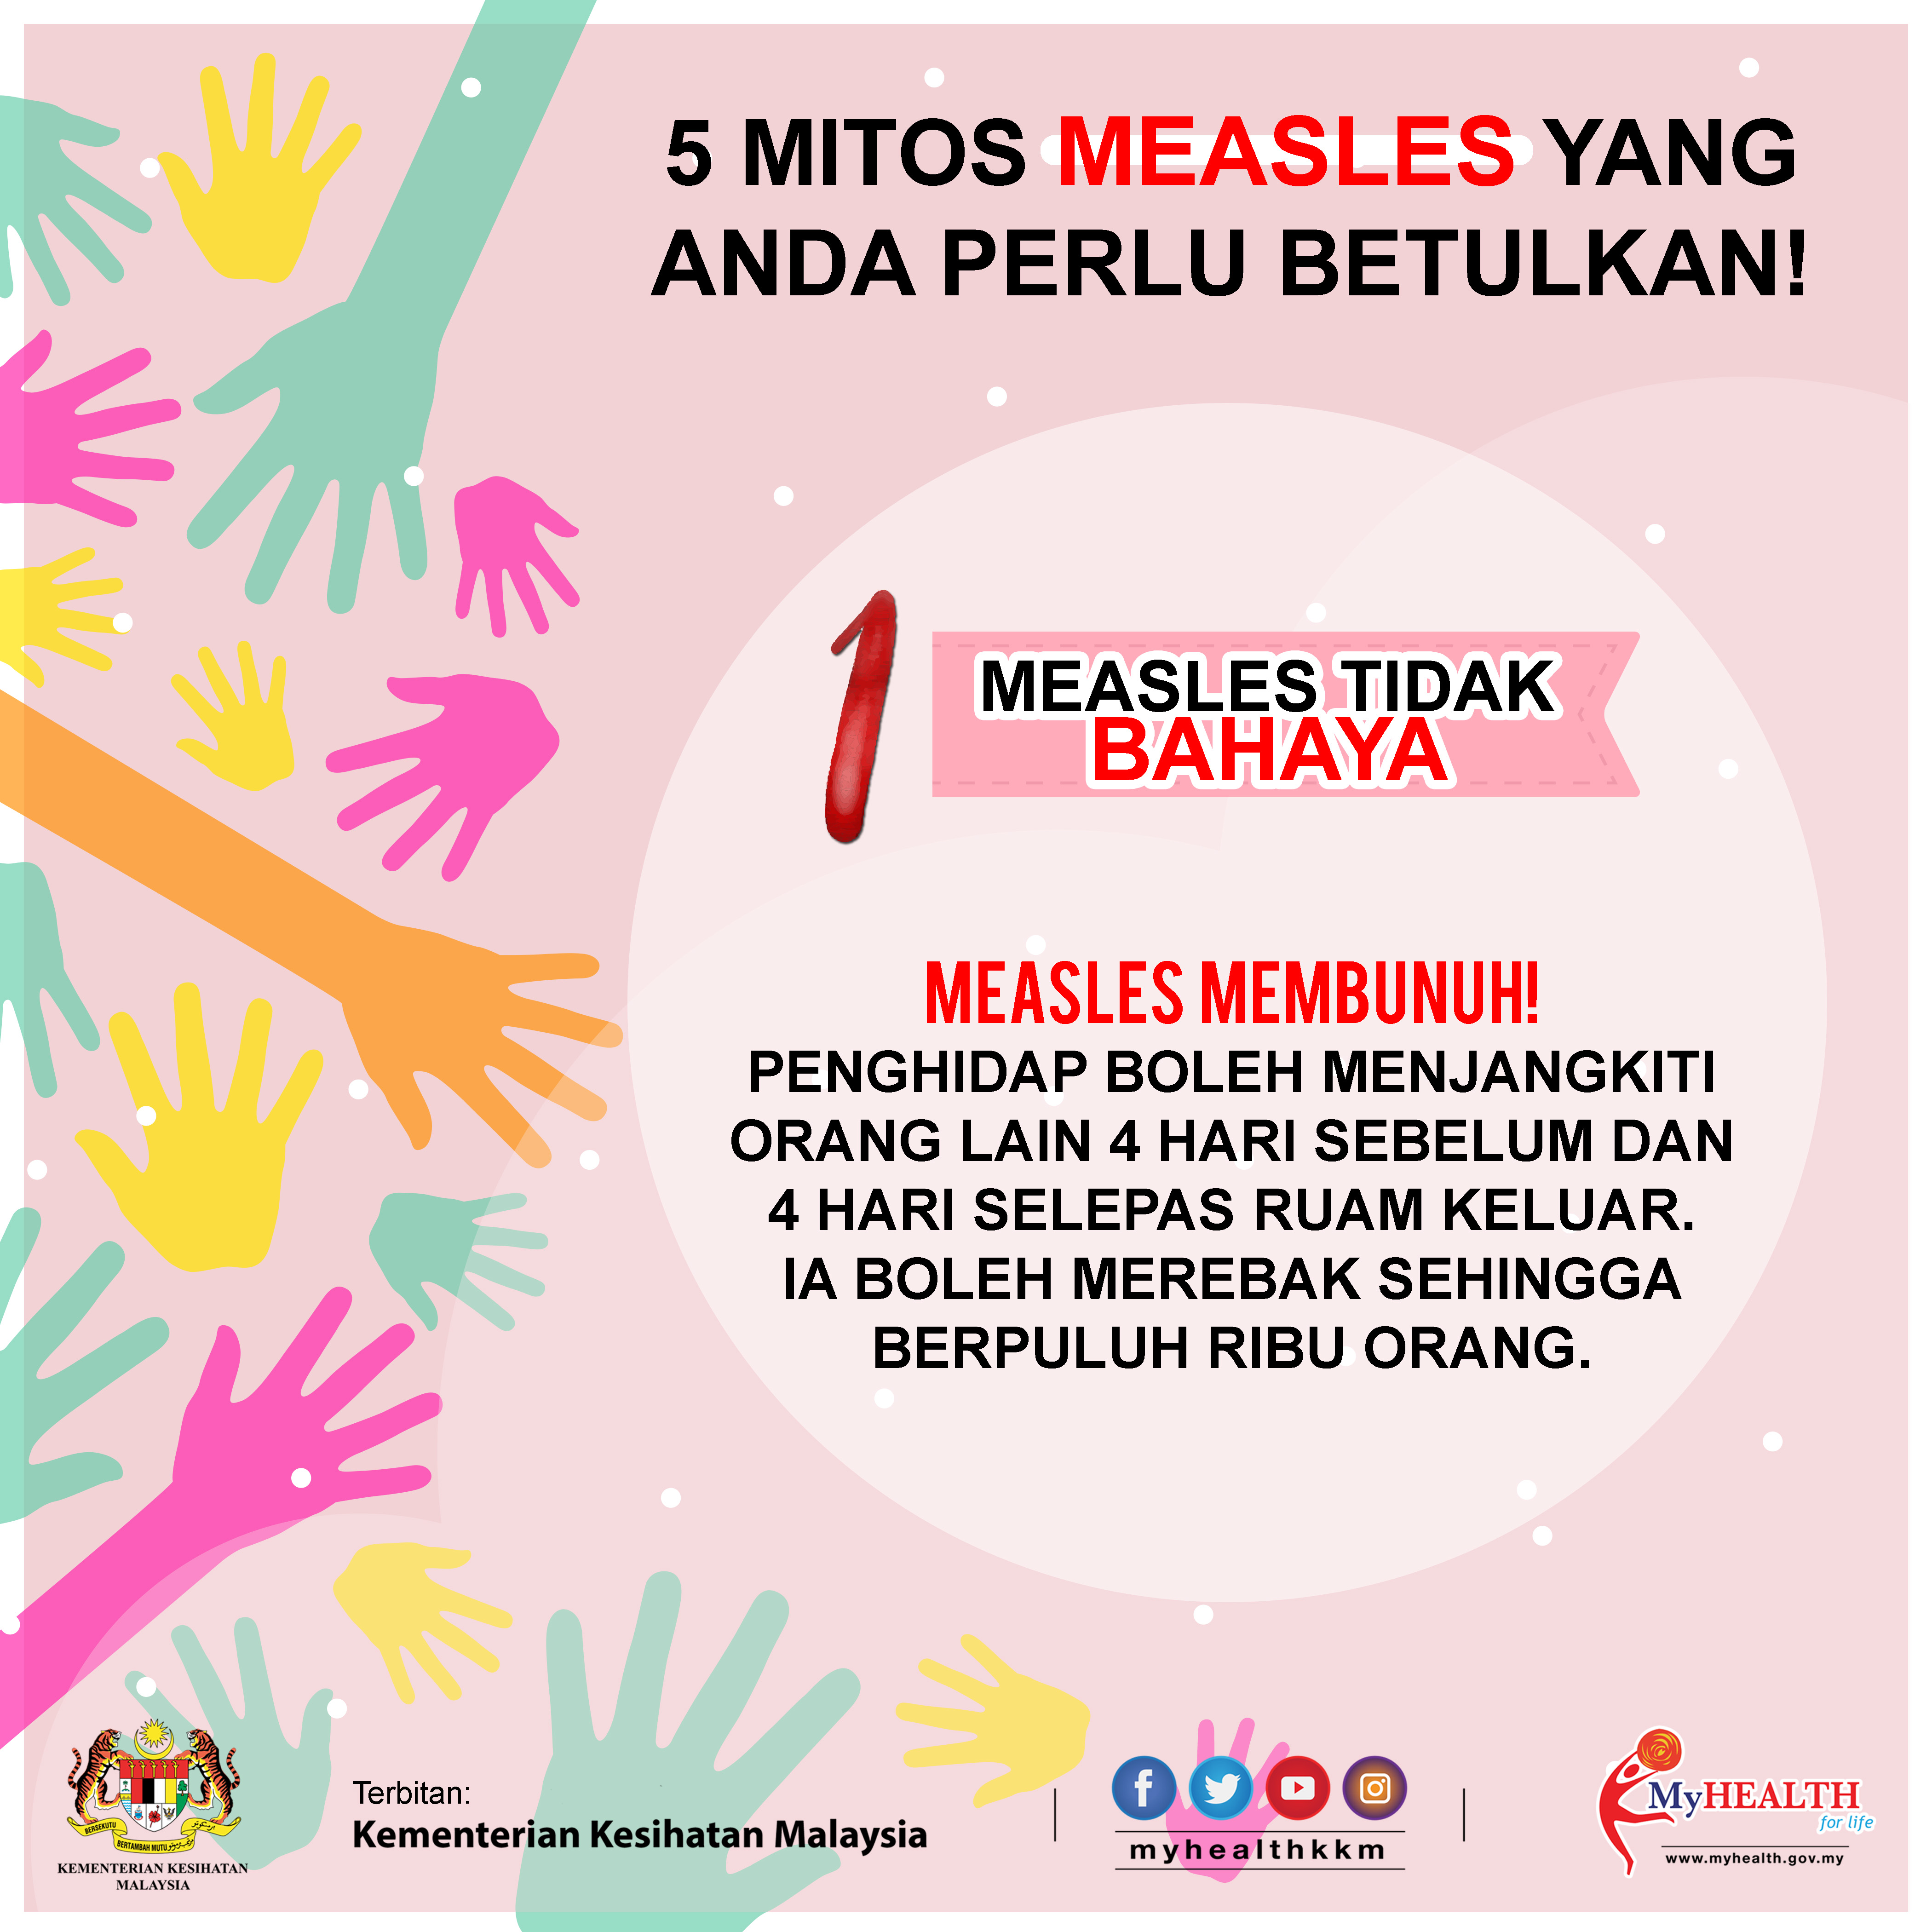 5 Mitos Measles (1)